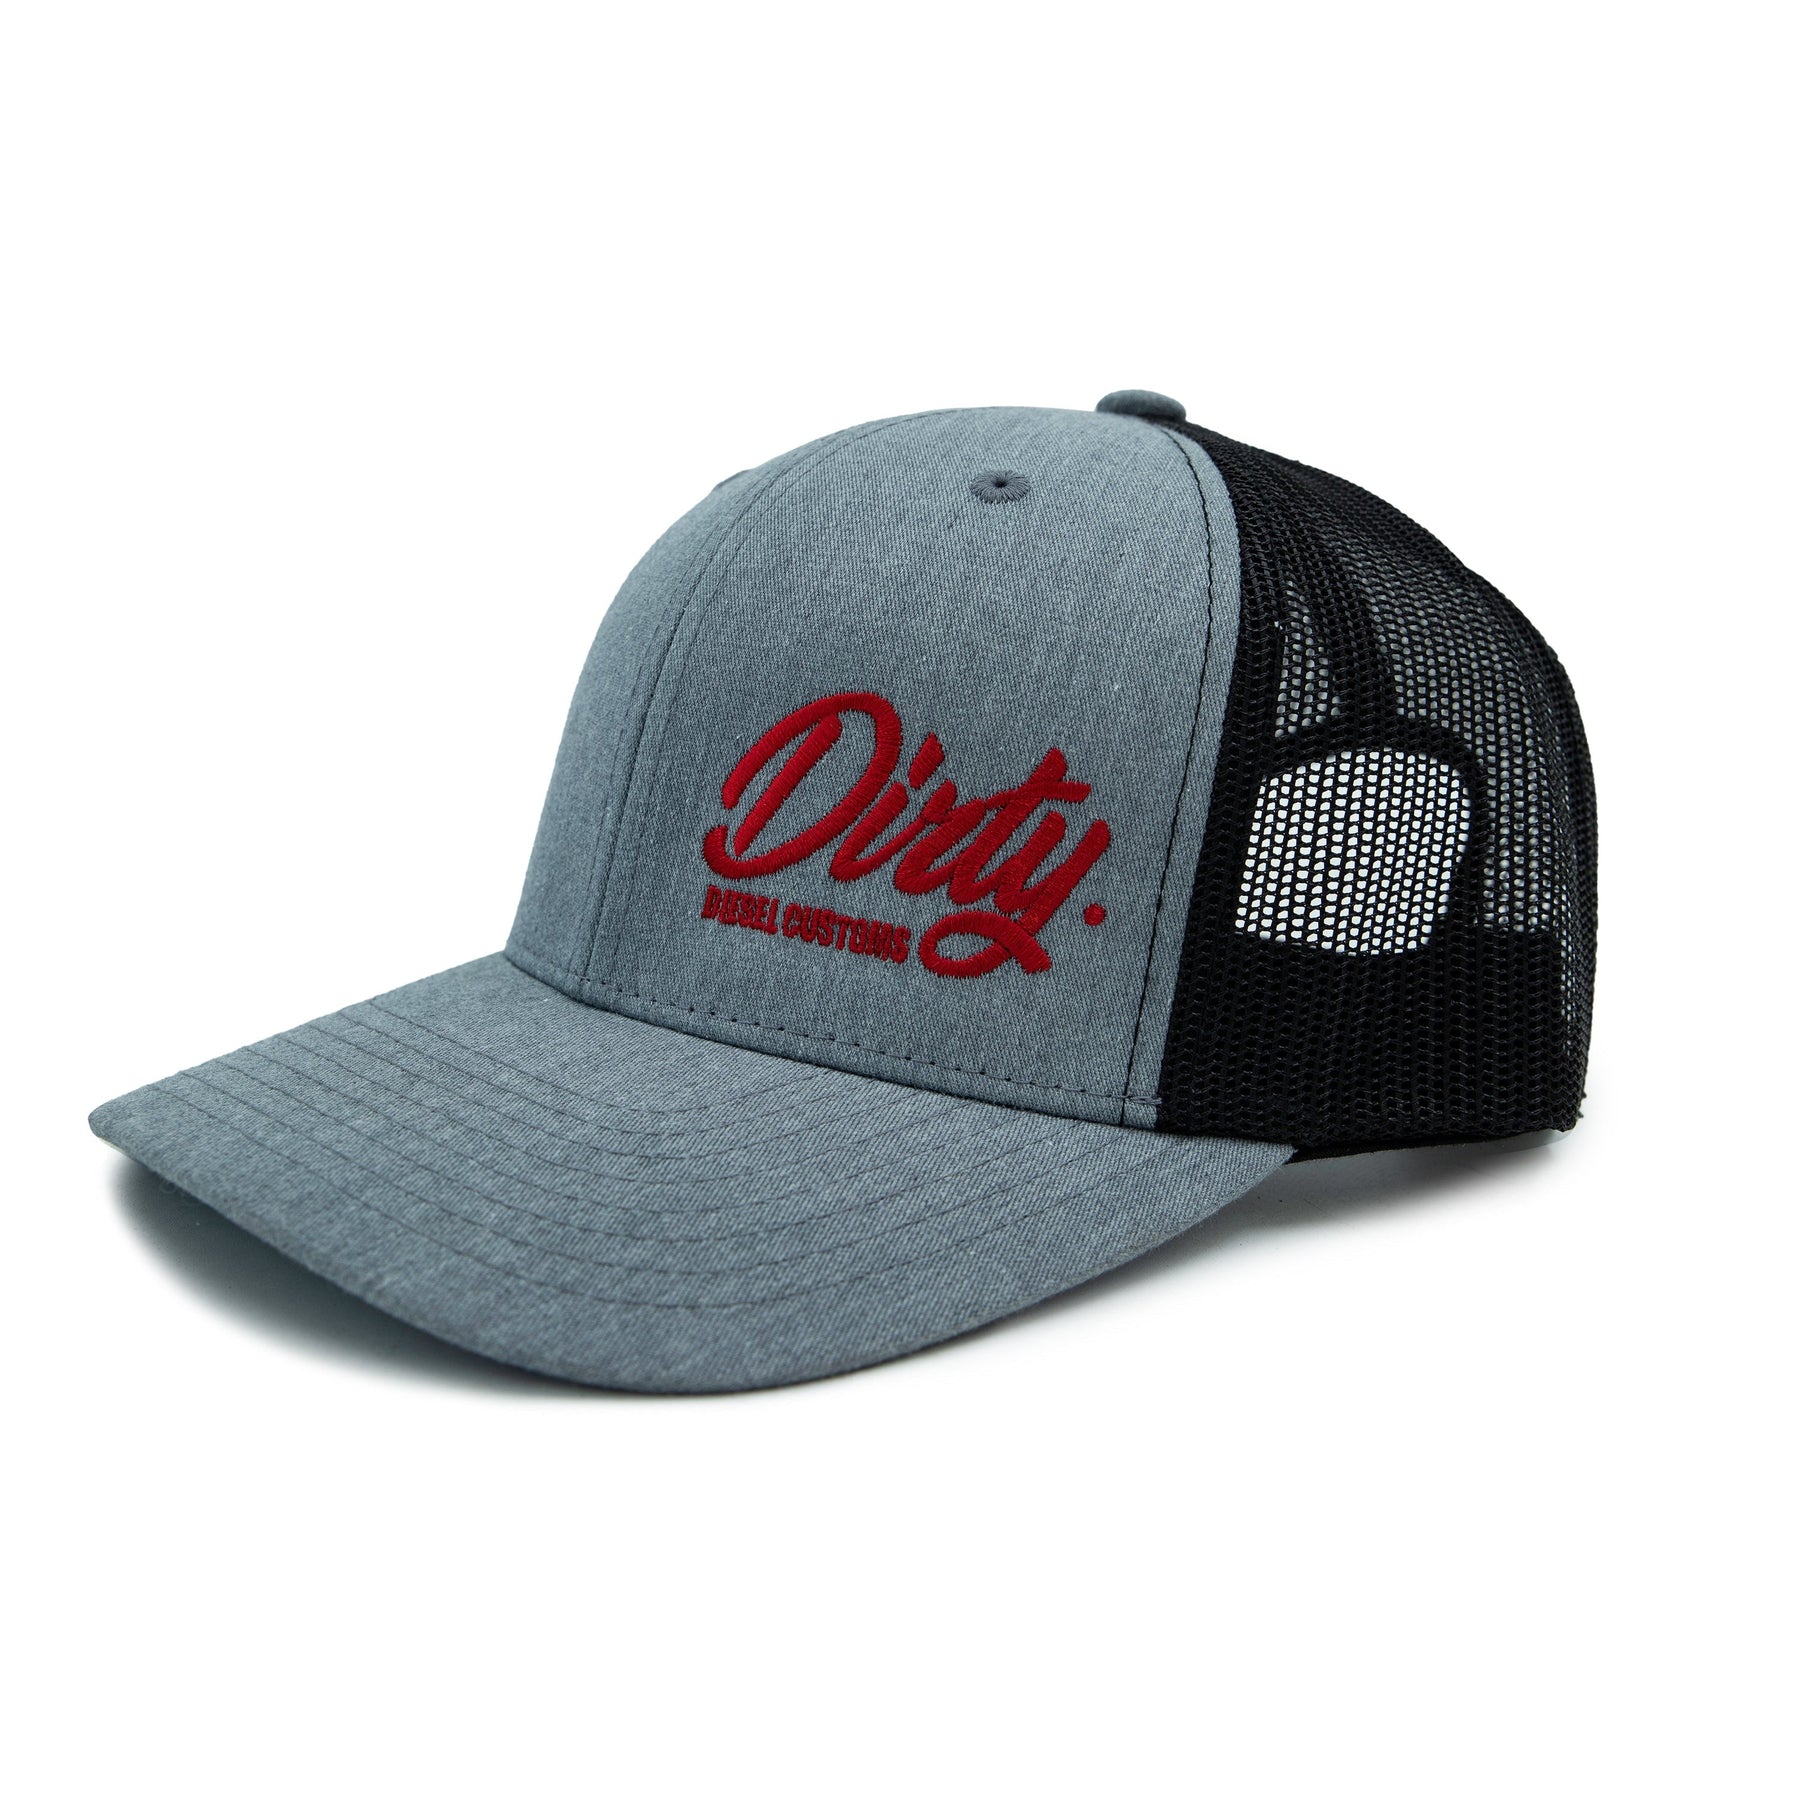 Dirty Diesel Snapback Hat-Hat-Dirty Diesel Customs-DDC-RG-SB-Dirty Diesel Customs